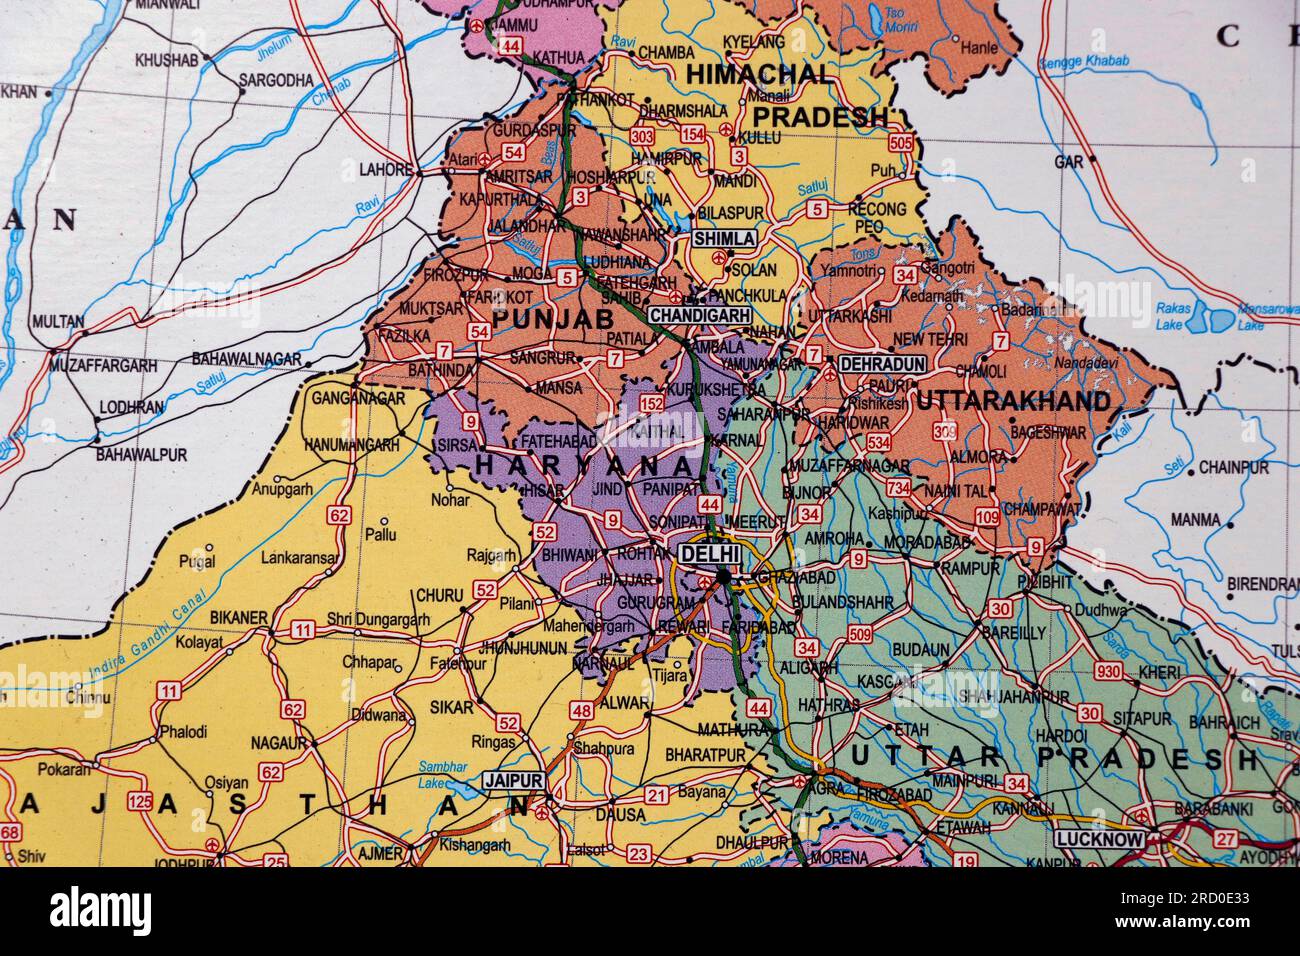 mapa del norte de la india con fronteras estatales, delhi, punjab, haryana en primer plano Foto de stock